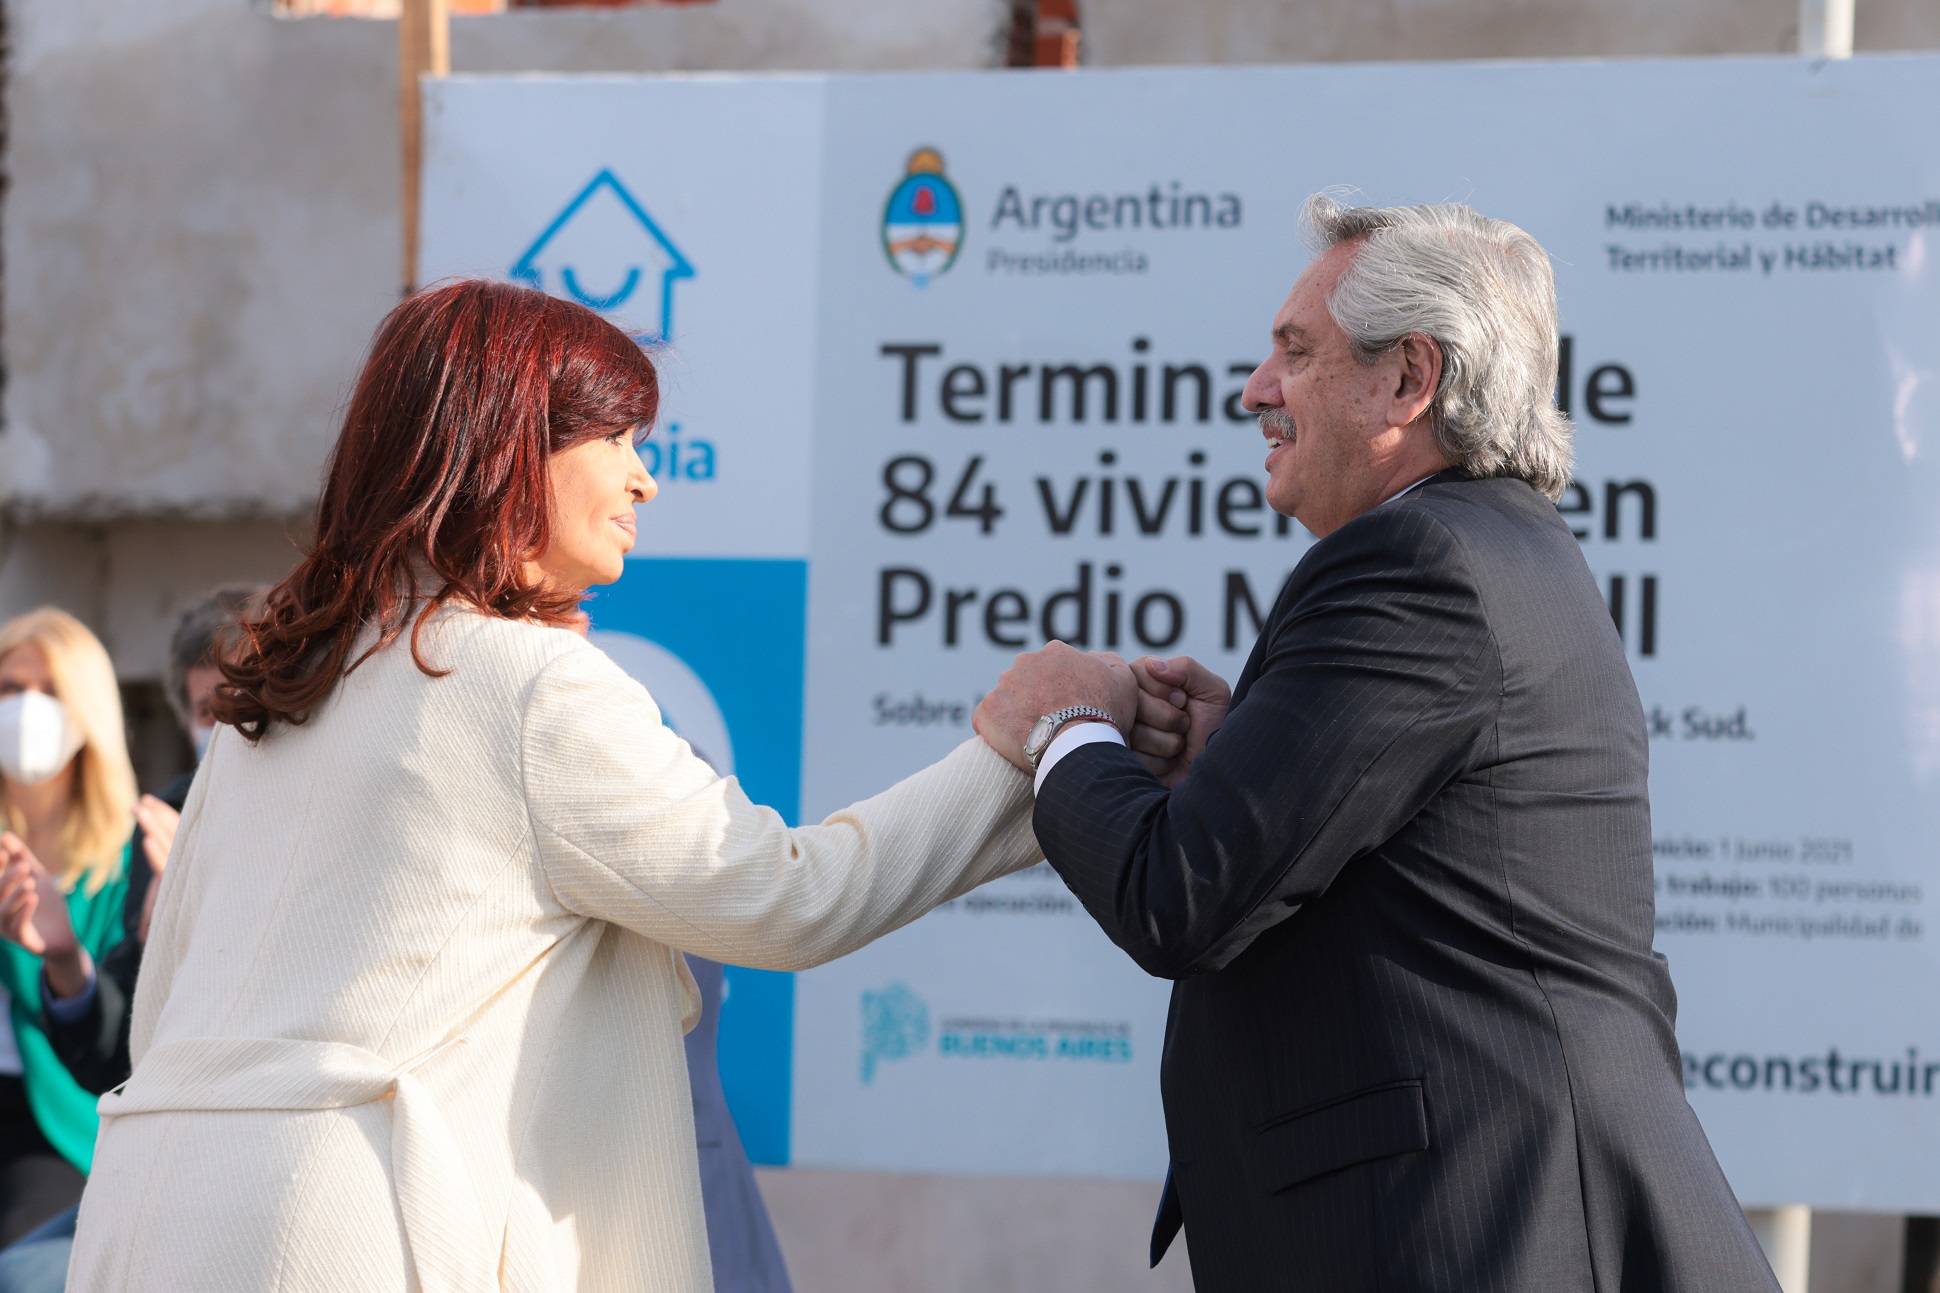 Alberto Fernández: “Estas casas dan alegría, trabajo y dignidad a quienes hoy comienzan a vivir en ellas”